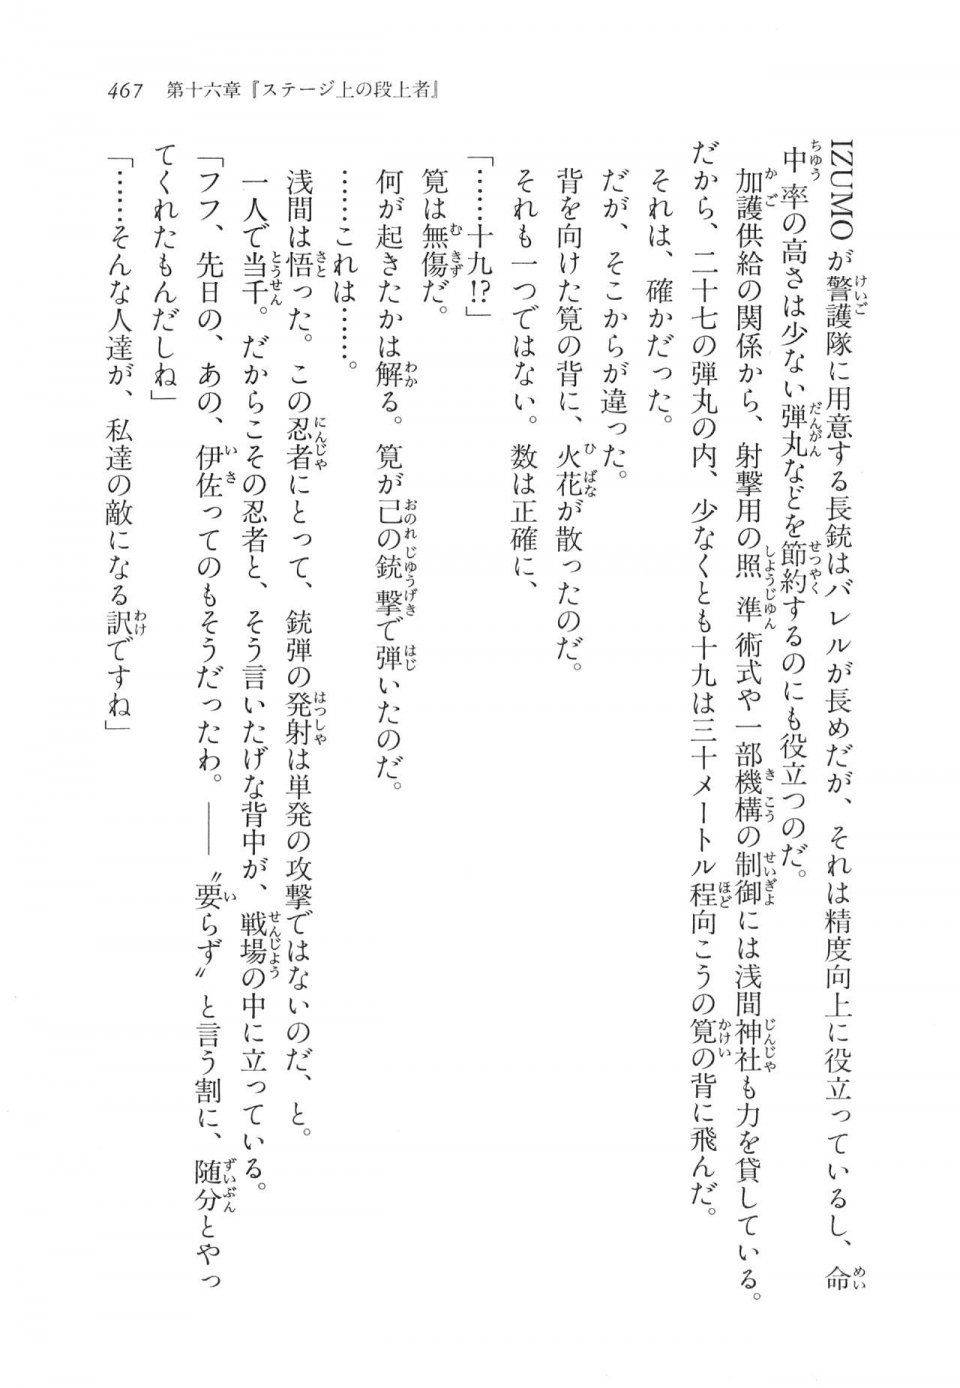 Kyoukai Senjou no Horizon LN Vol 11(5A) - Photo #467